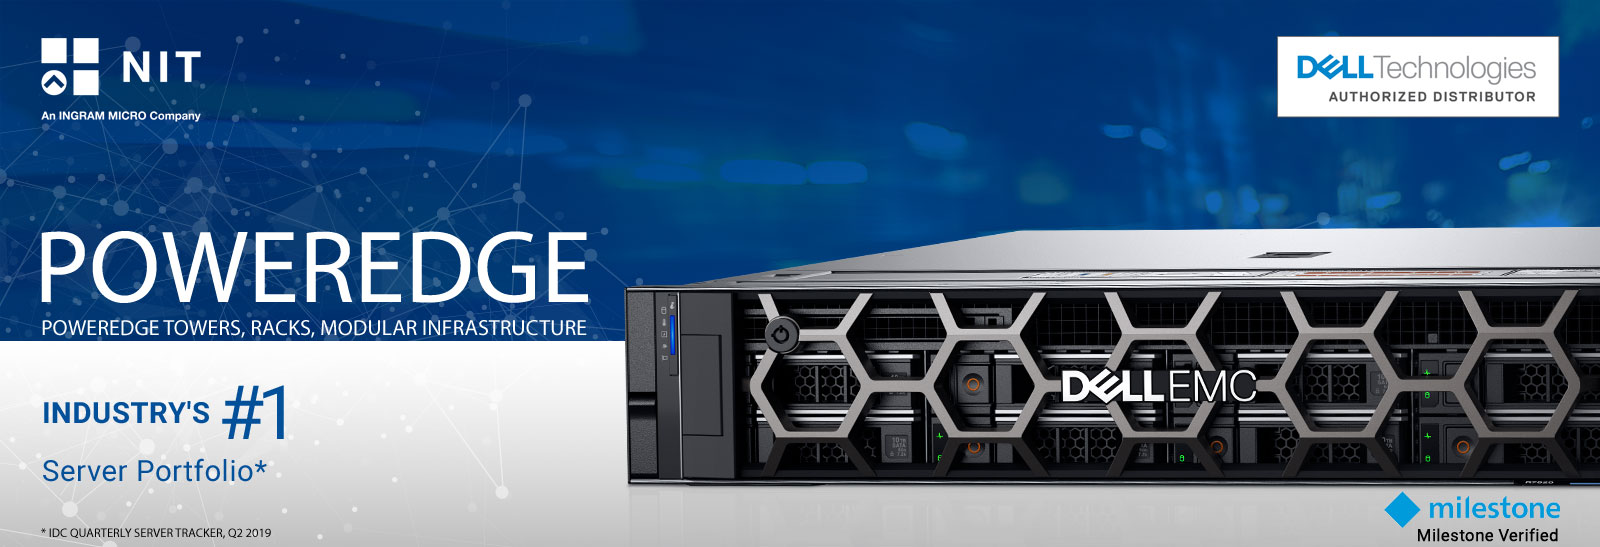 DellEMC PowerEdge Server